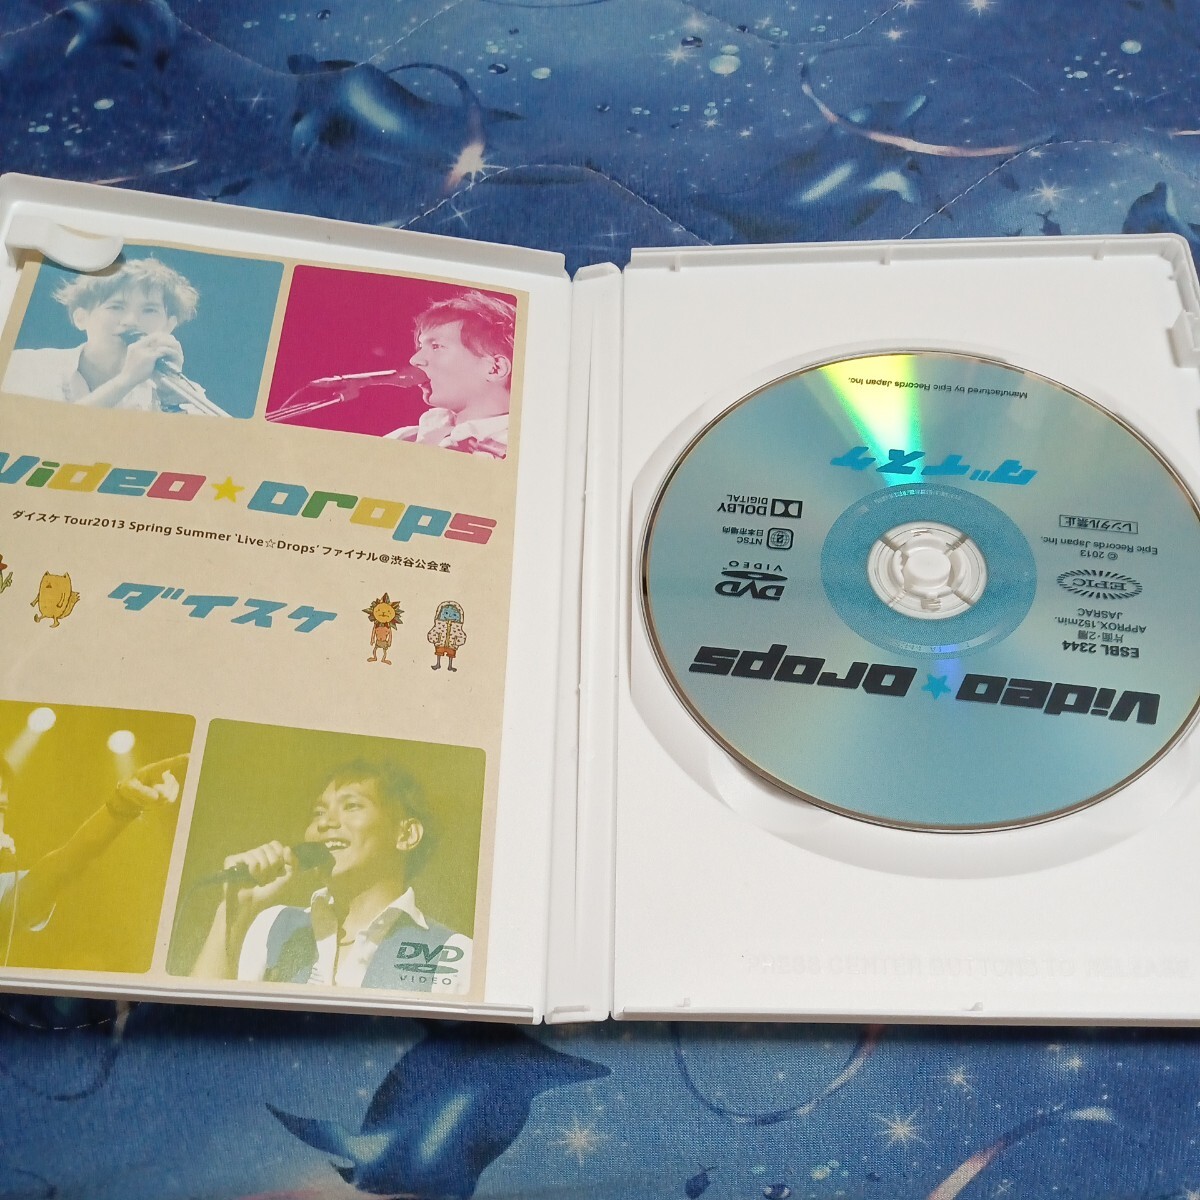 ダイスケ DVD/Video☆Drops〜 ダイスケTour2013 Spring Summer Live☆Dropsファイナル @渋谷公会堂〜 13/11/27発売 オリコン加盟店